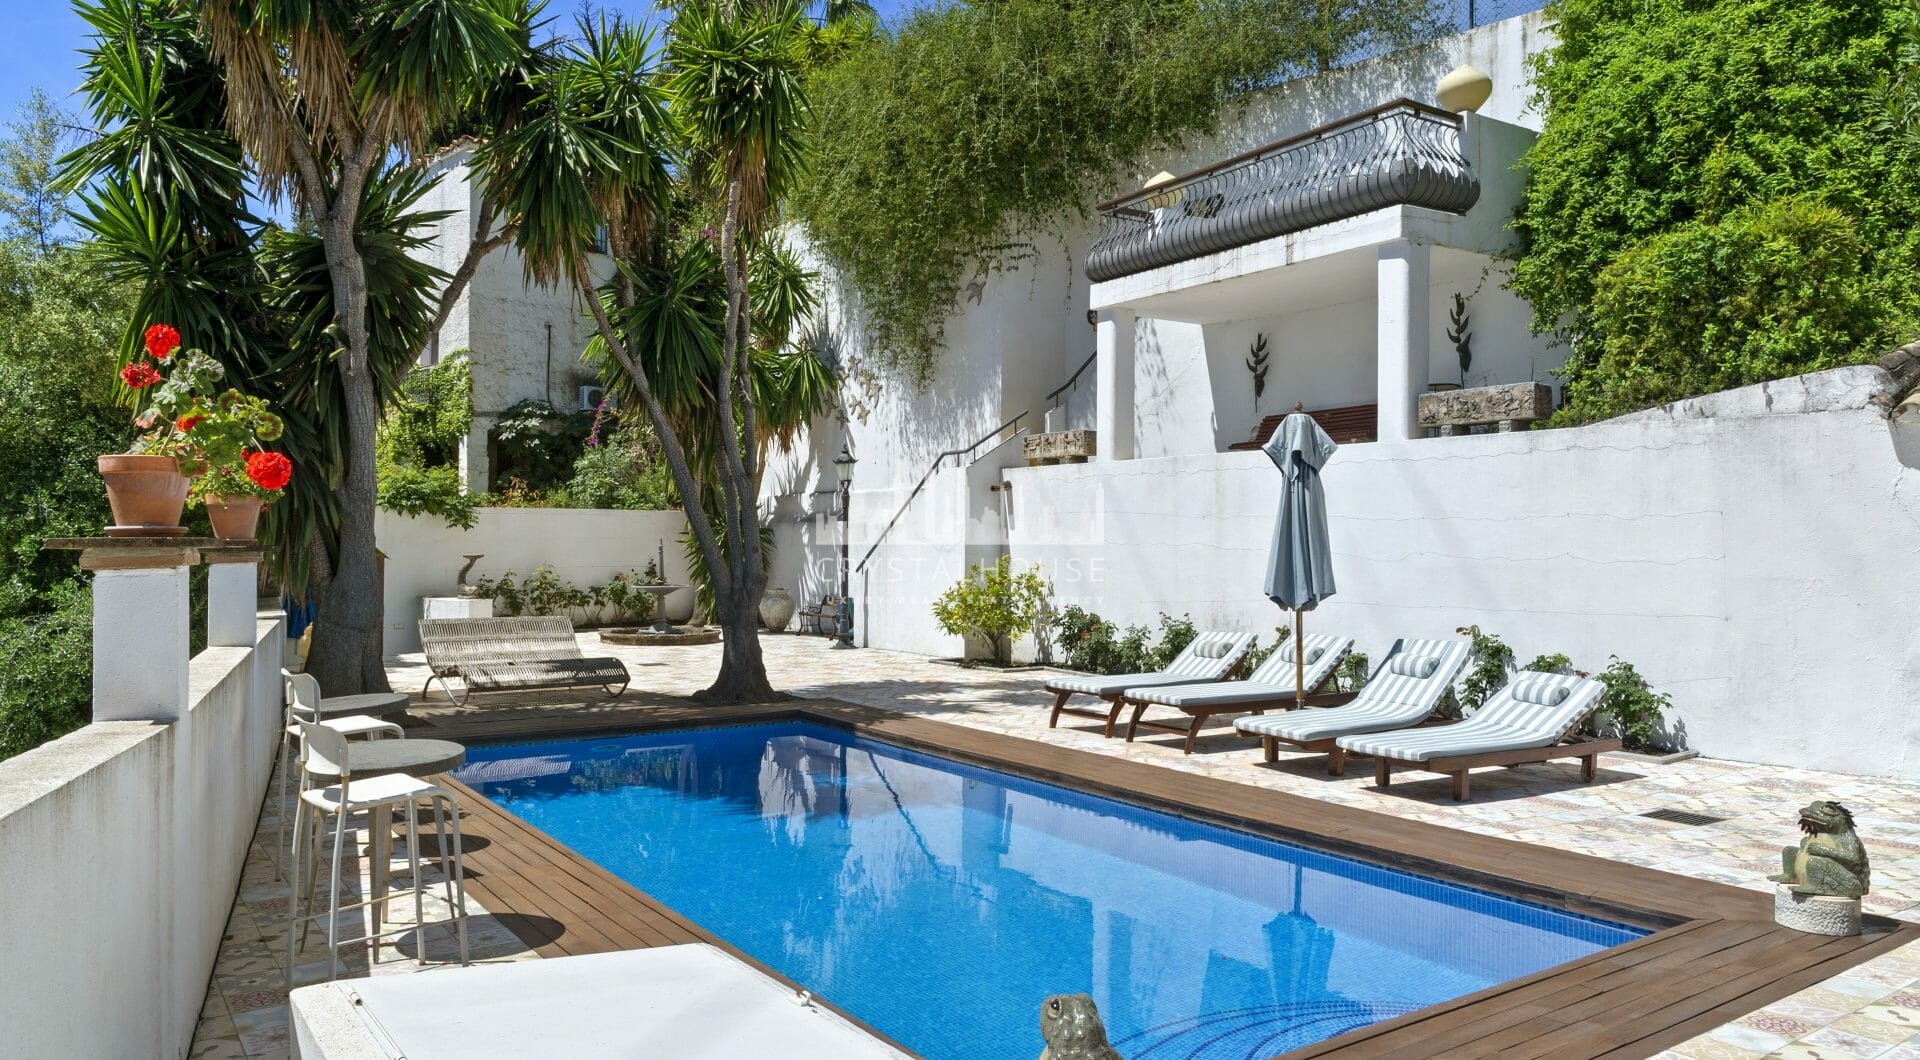 Wyróżniająca się i stylowa, wolnostojąca willa z dużym domem gościnnym, położona w ekskluzywnej urbanizacji Fuente del Espanto przy drodze Ronda, w odległości krótkiej przejażdżki samochodem od udogodnień i plaż San Pedro de Alcántara.